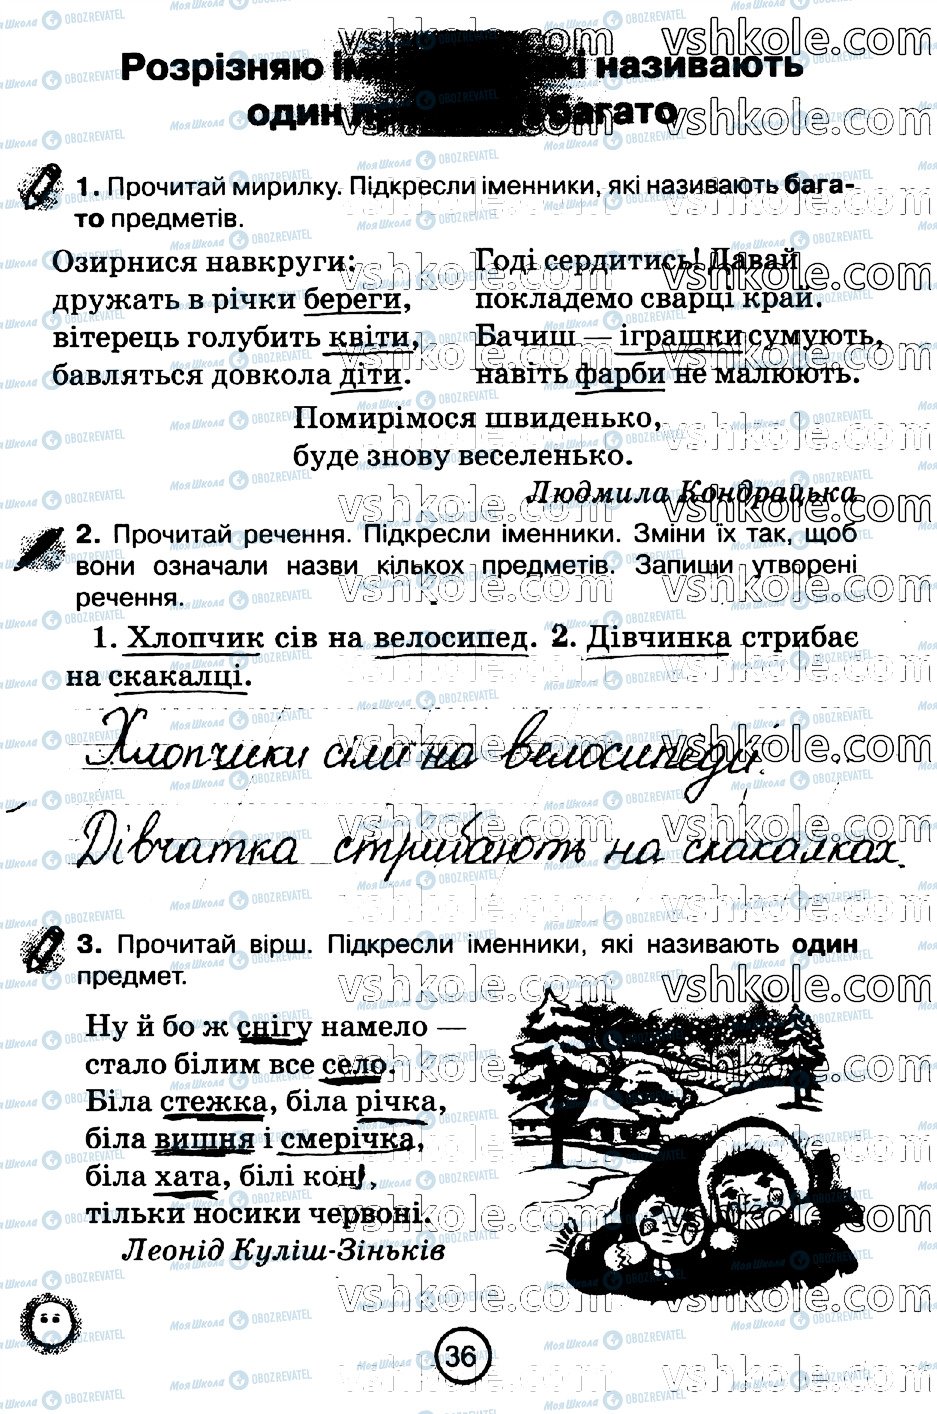 ГДЗ Укр мова 2 класс страница стр36